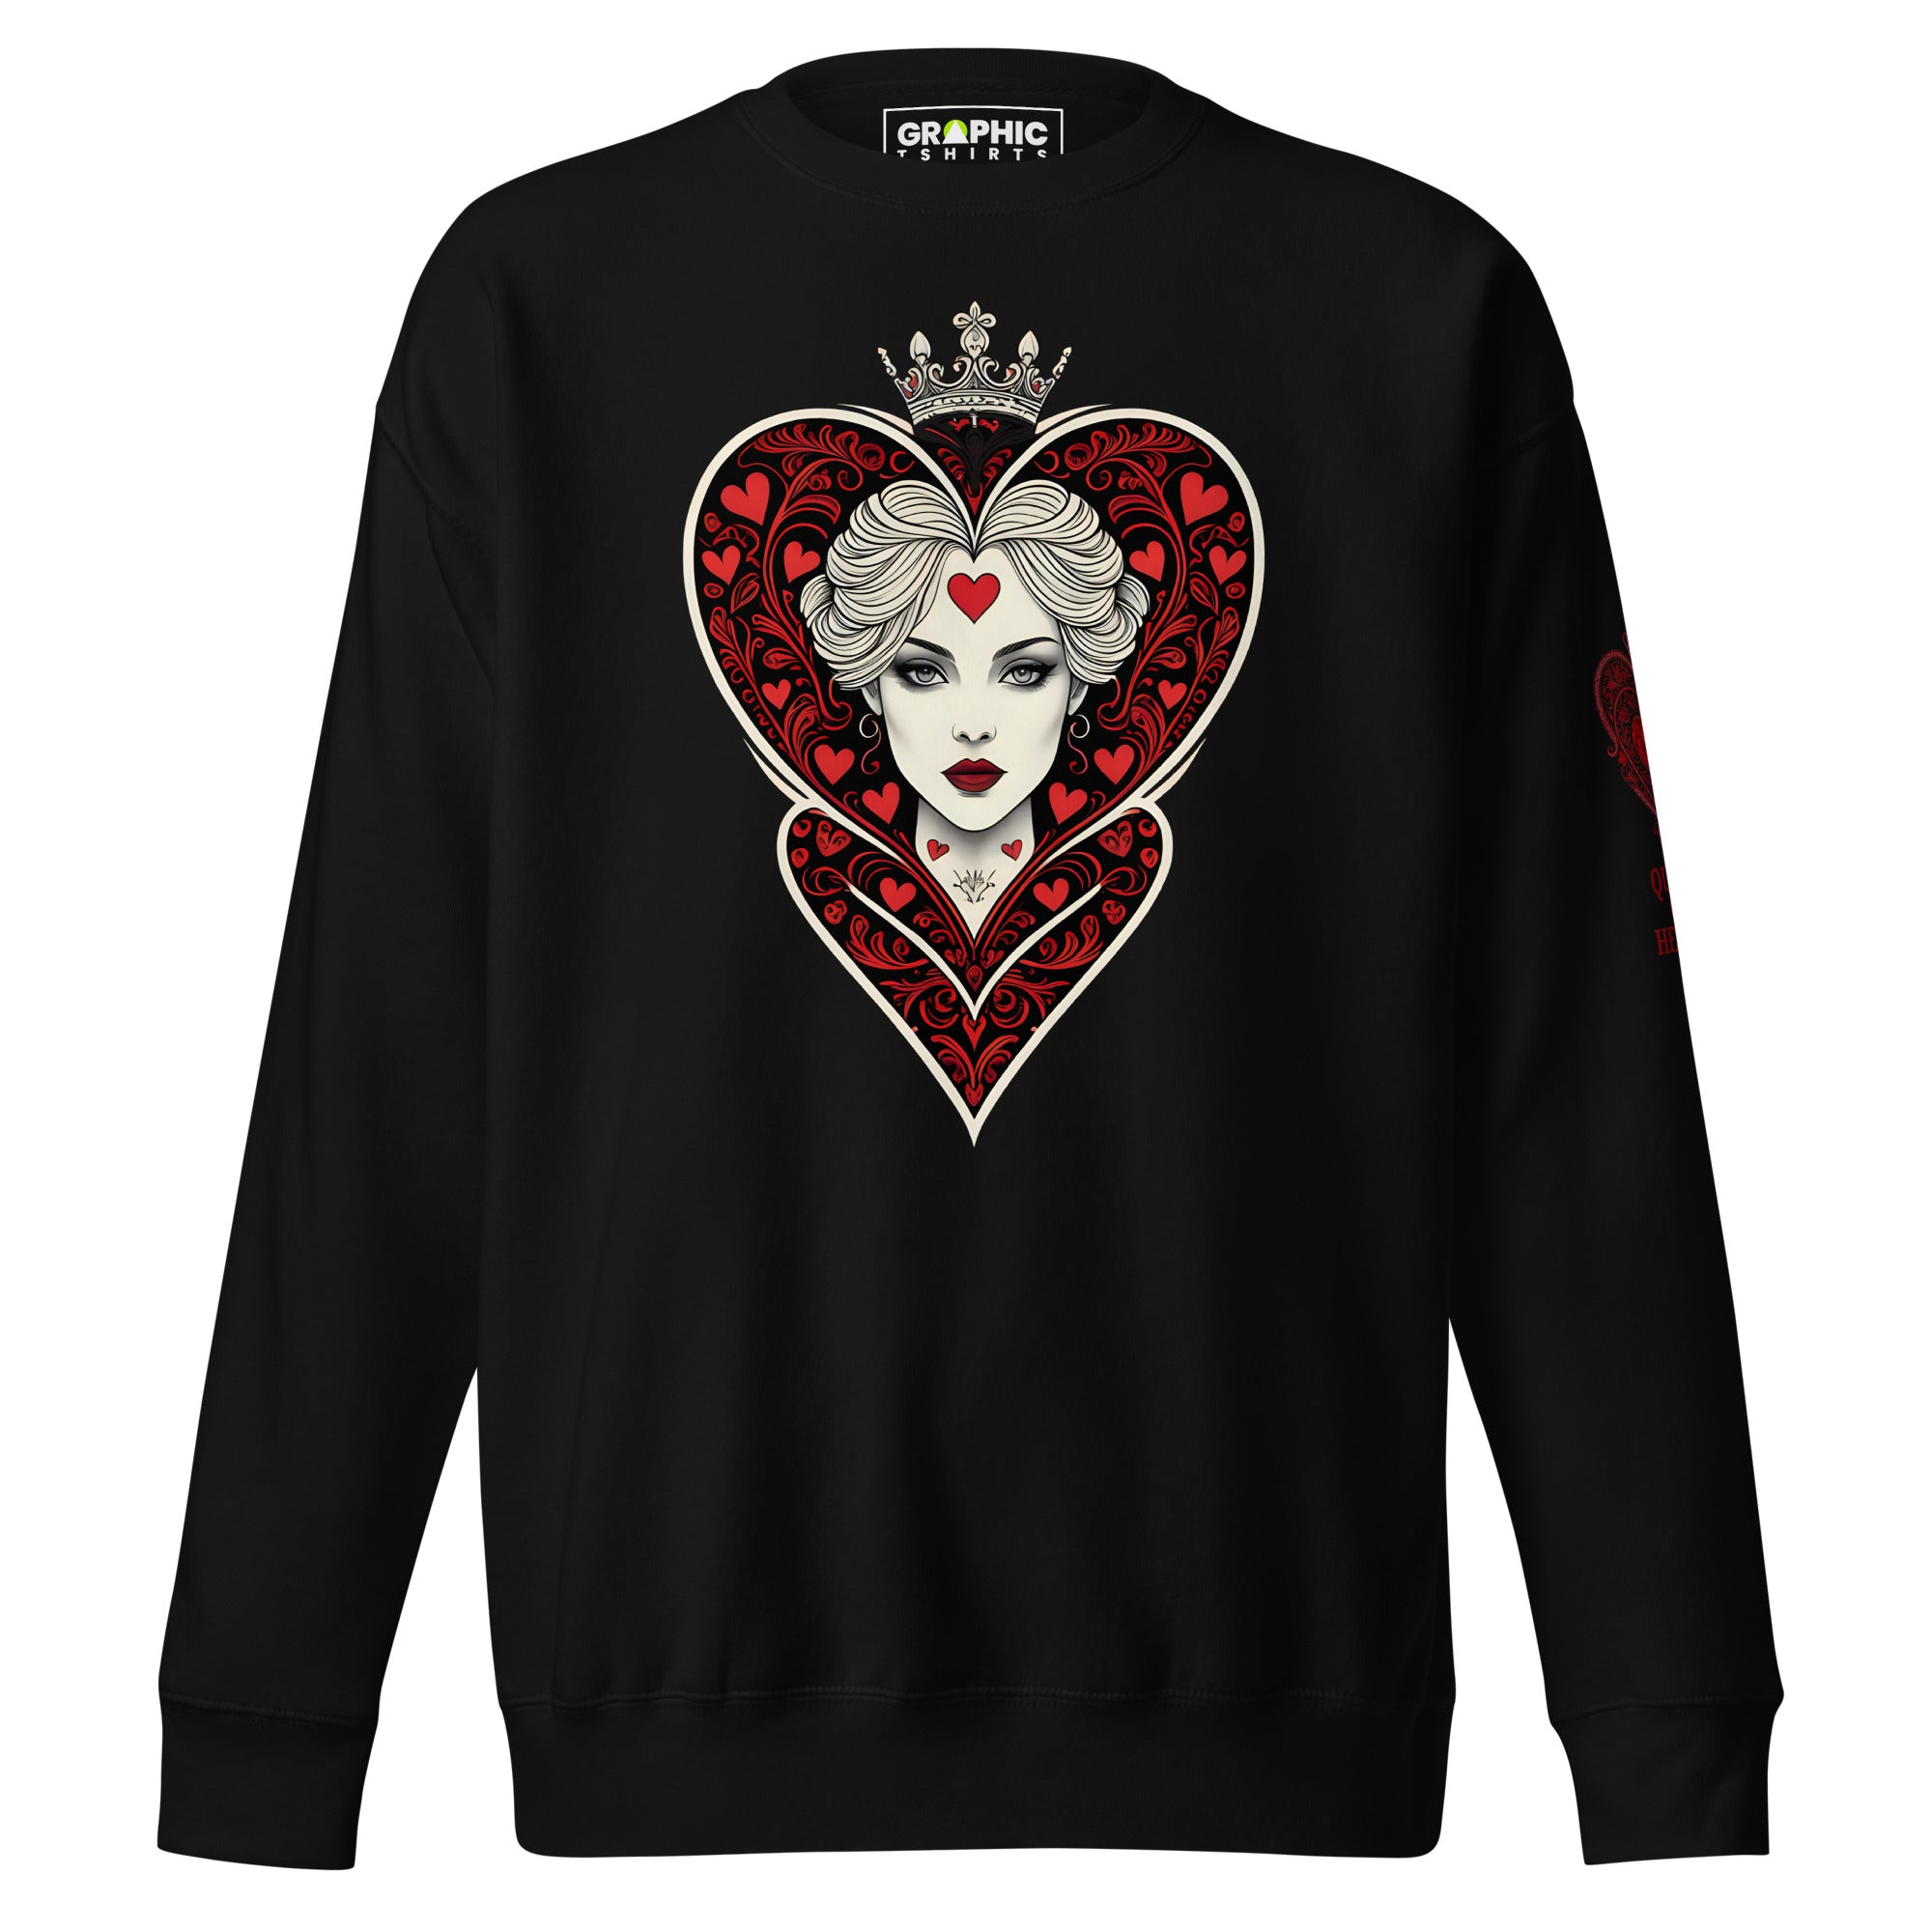 Unisex Premium Sweatshirt - Queen Of Hearts Series v.4